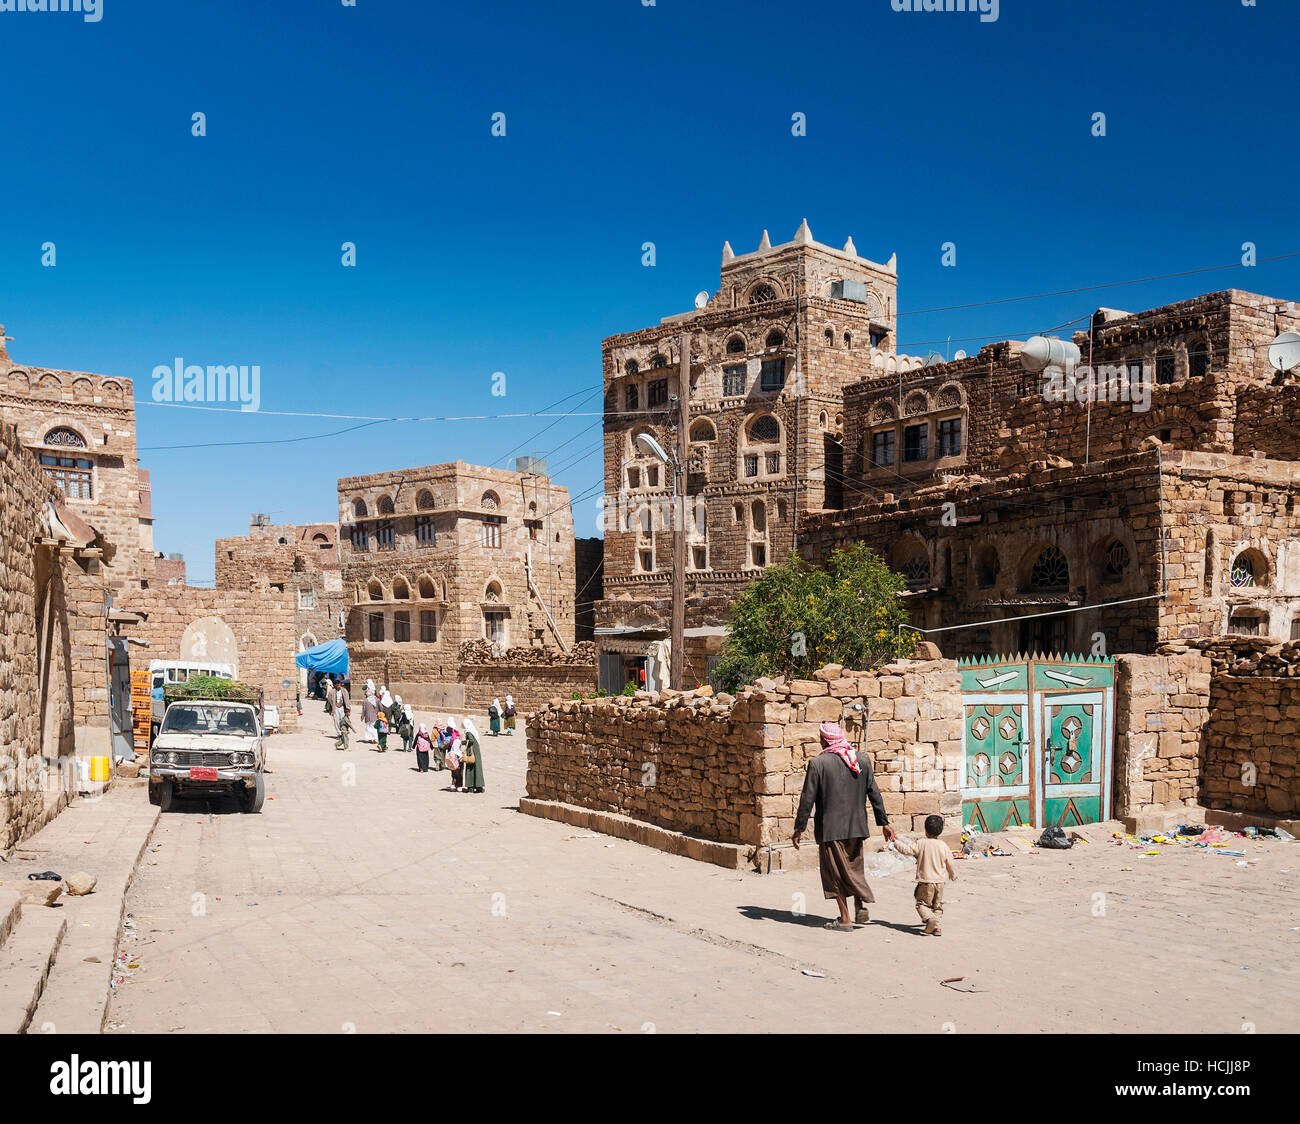 Strada nel vecchio tradizionale patrimonio yemenita shibam villaggio vicino sanaa yemen Foto Stock